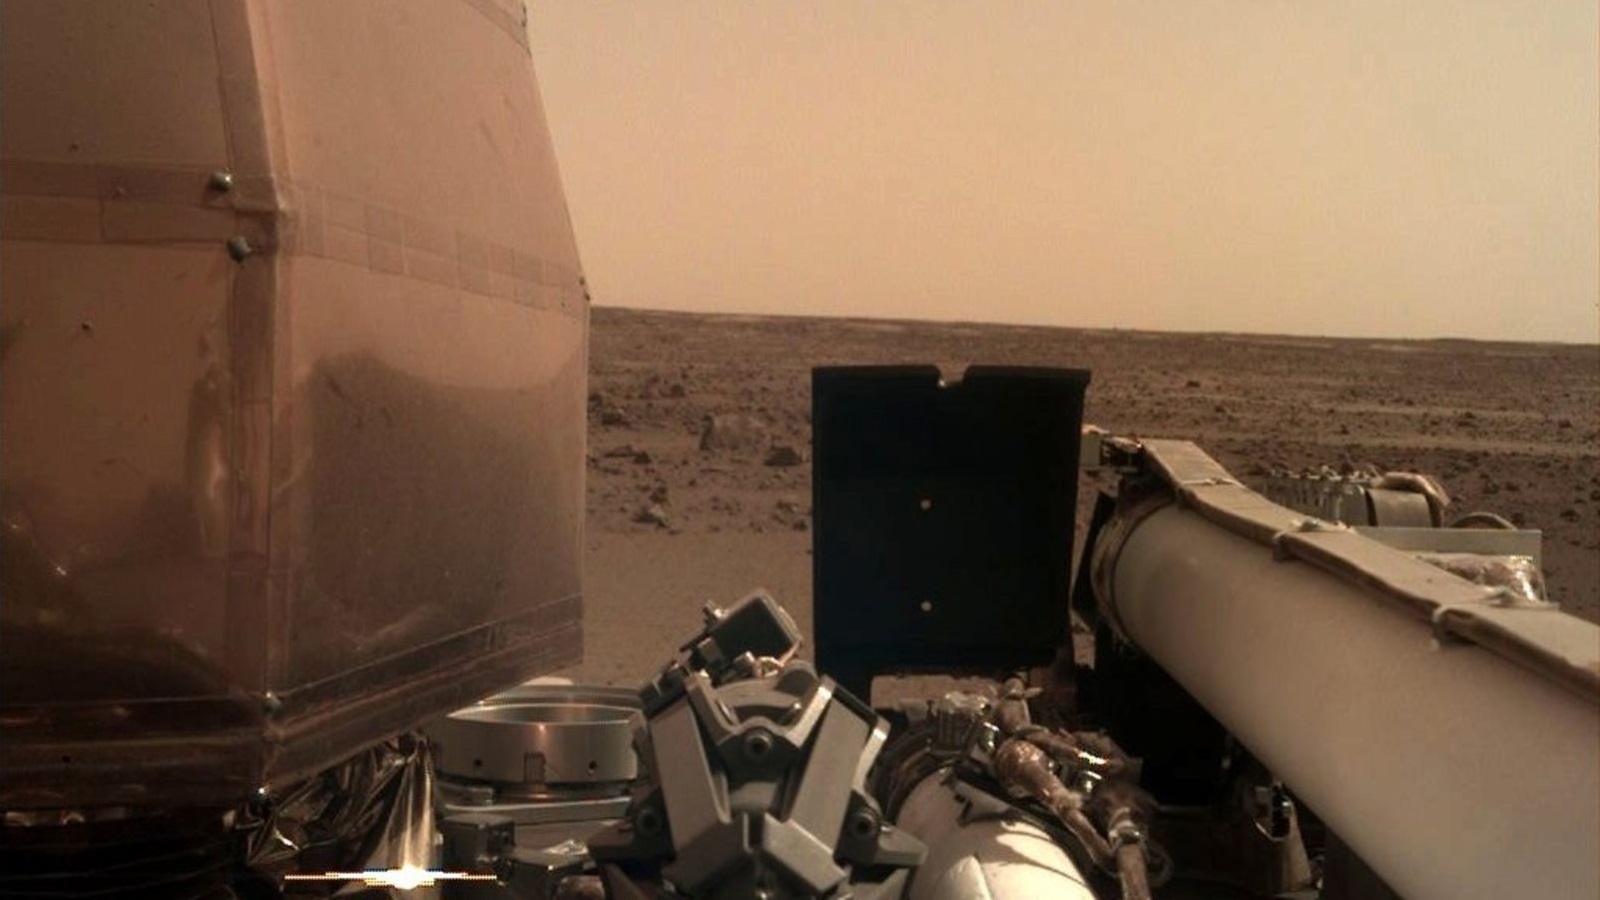 الصورة التي أرسلها إنسايت تُظهر بوضوح أفق المريخ مع جزء من ذراع المركبة وجسمها (ناسا)